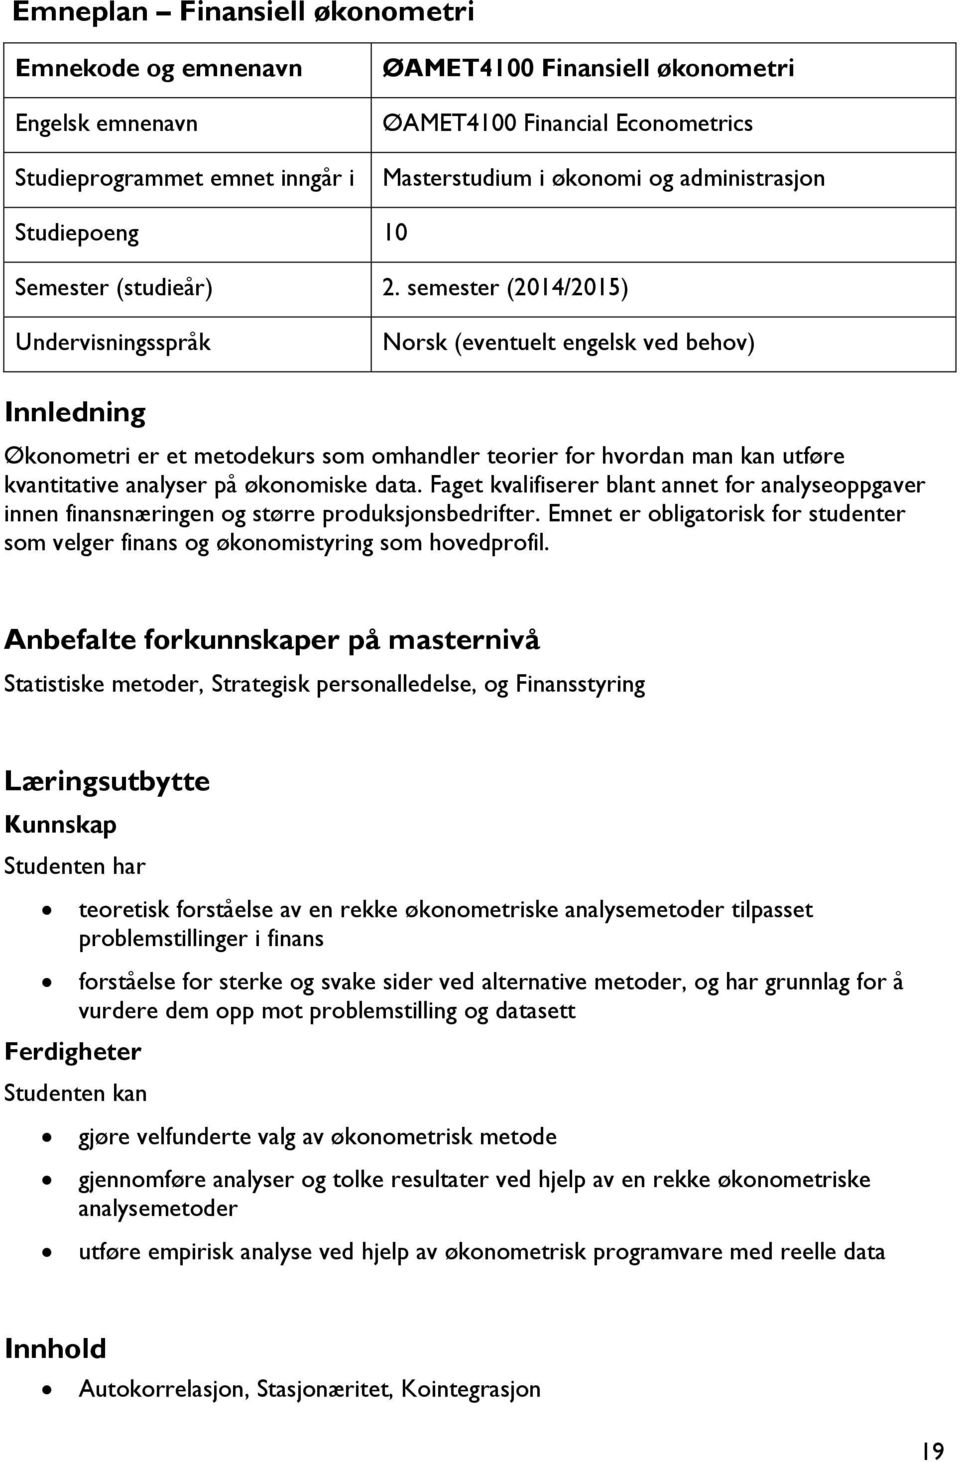 semester (2014/2015) Undervisningsspråk Norsk (eventuelt engelsk ved behov) Innledning Økonometri er et metodekurs som omhandler teorier for hvordan man kan utføre kvantitative analyser på økonomiske